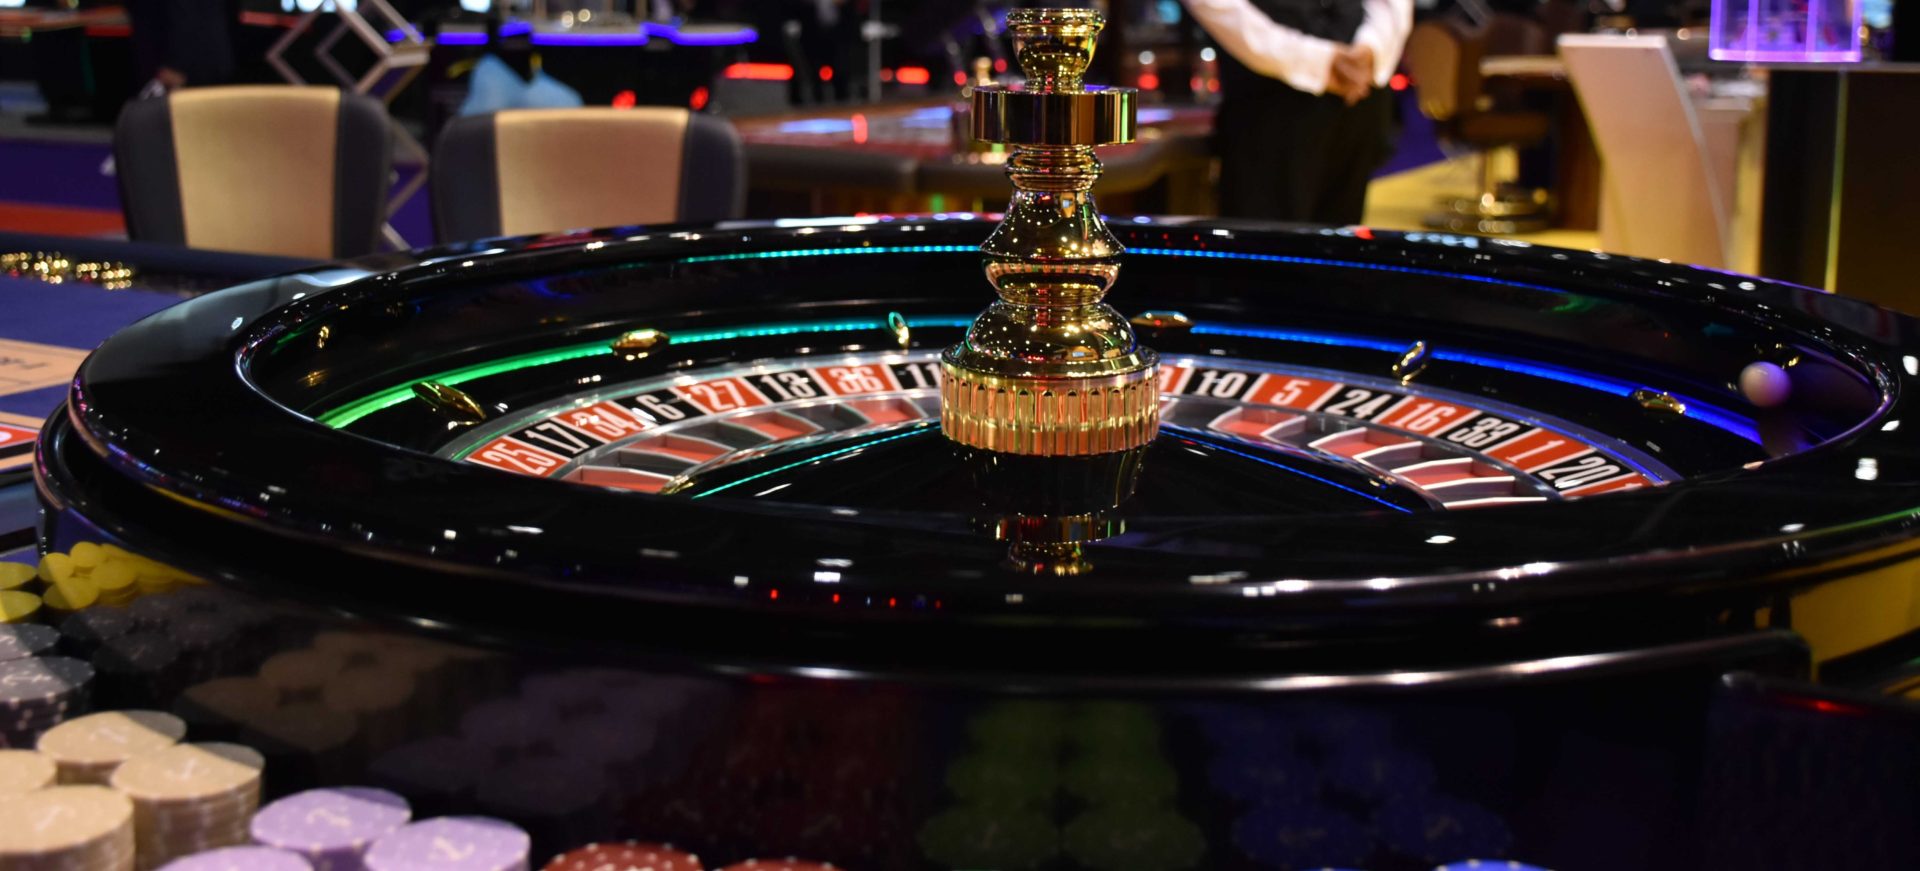 Jocuri de noroc cu sloturi cazino pentru bani reali